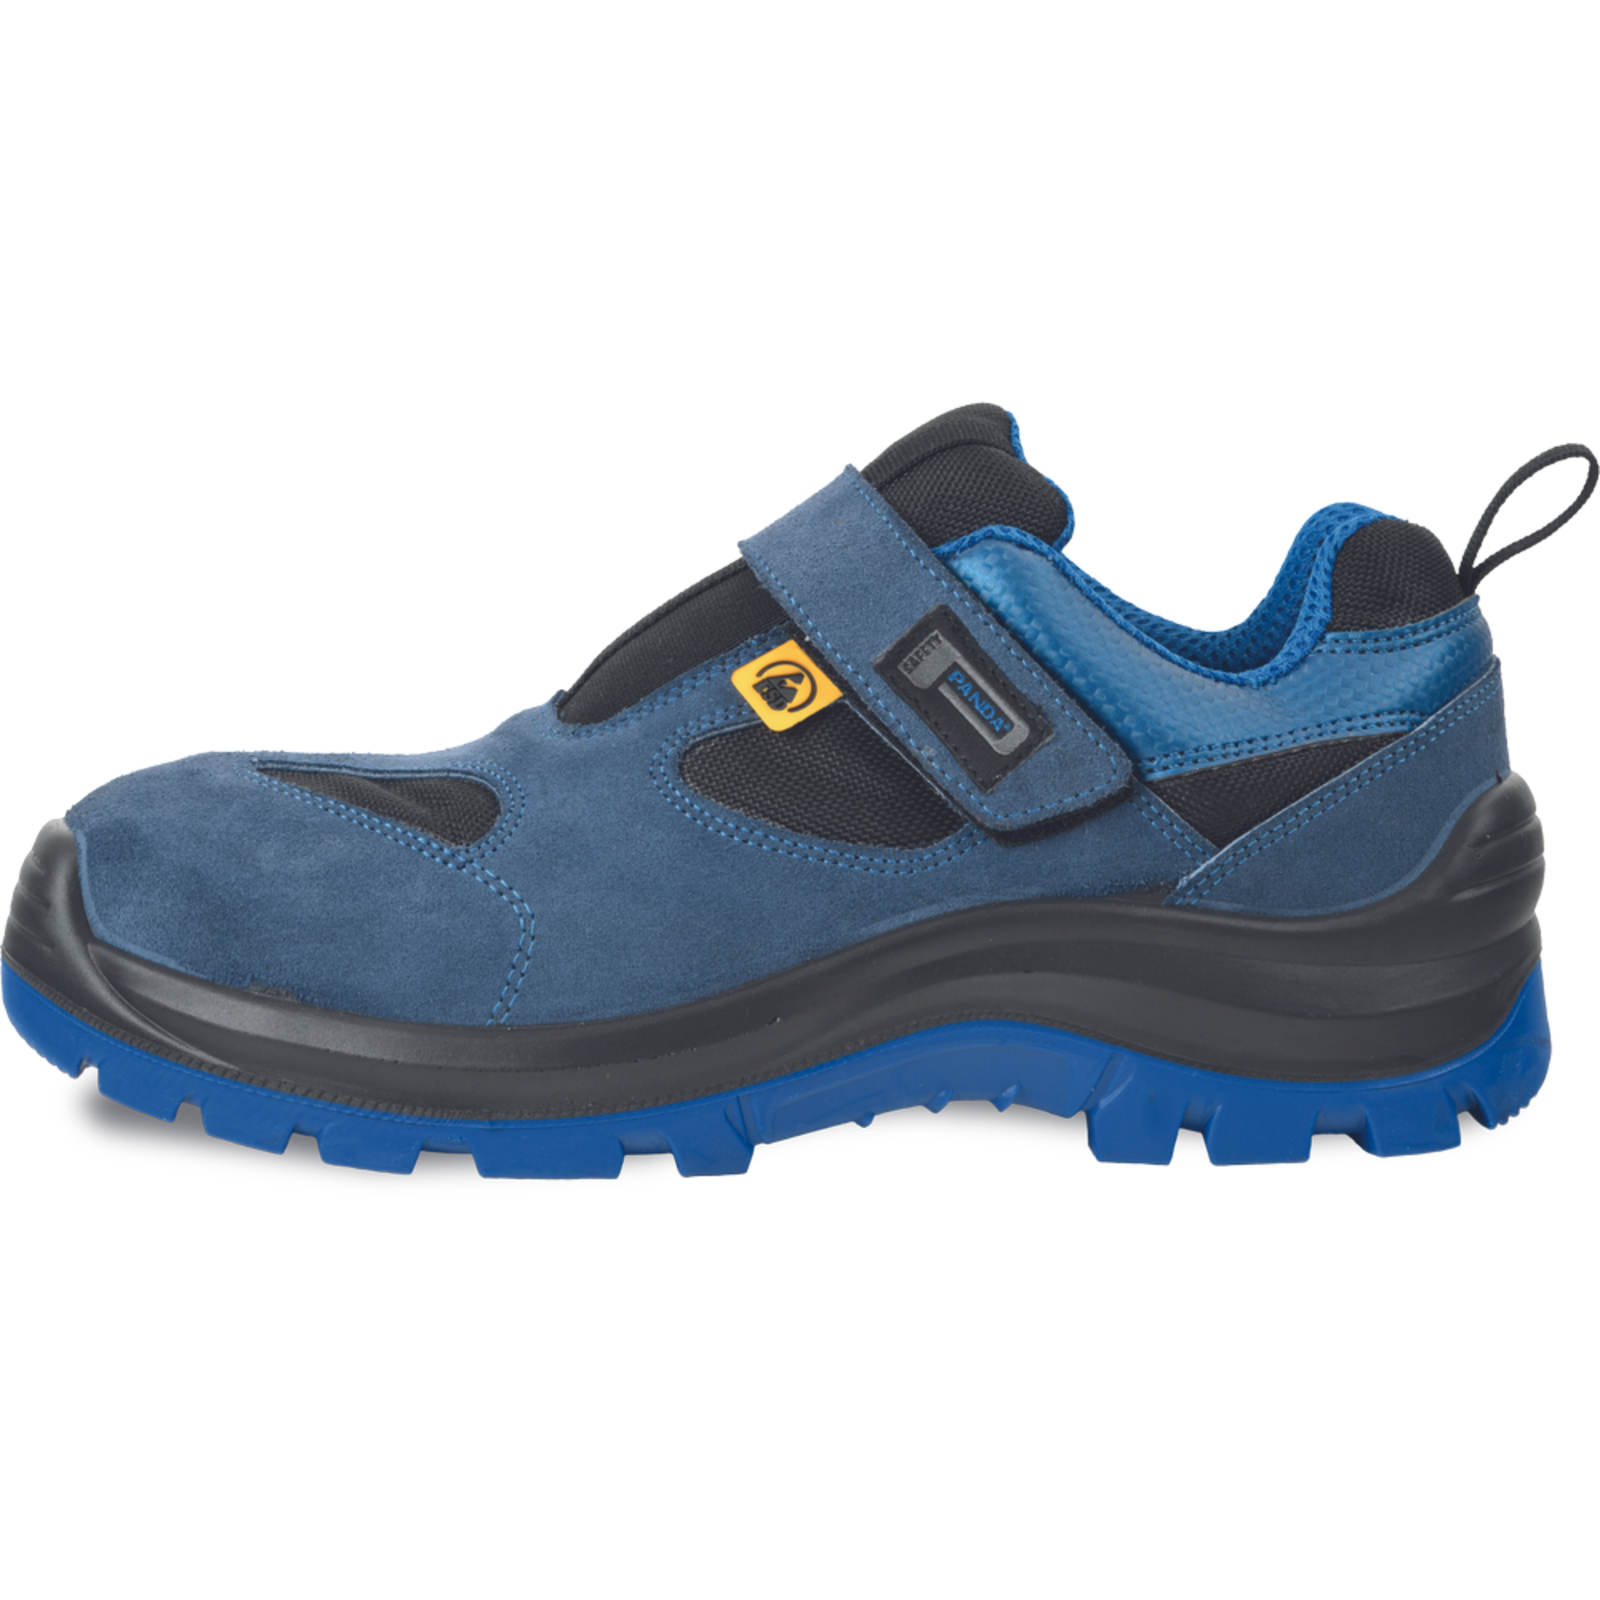 Bezpečnostné pracovné sandále Panda Wilk MF ESD S1P SRC - veľkosť: 37, farba: modrá/čierna